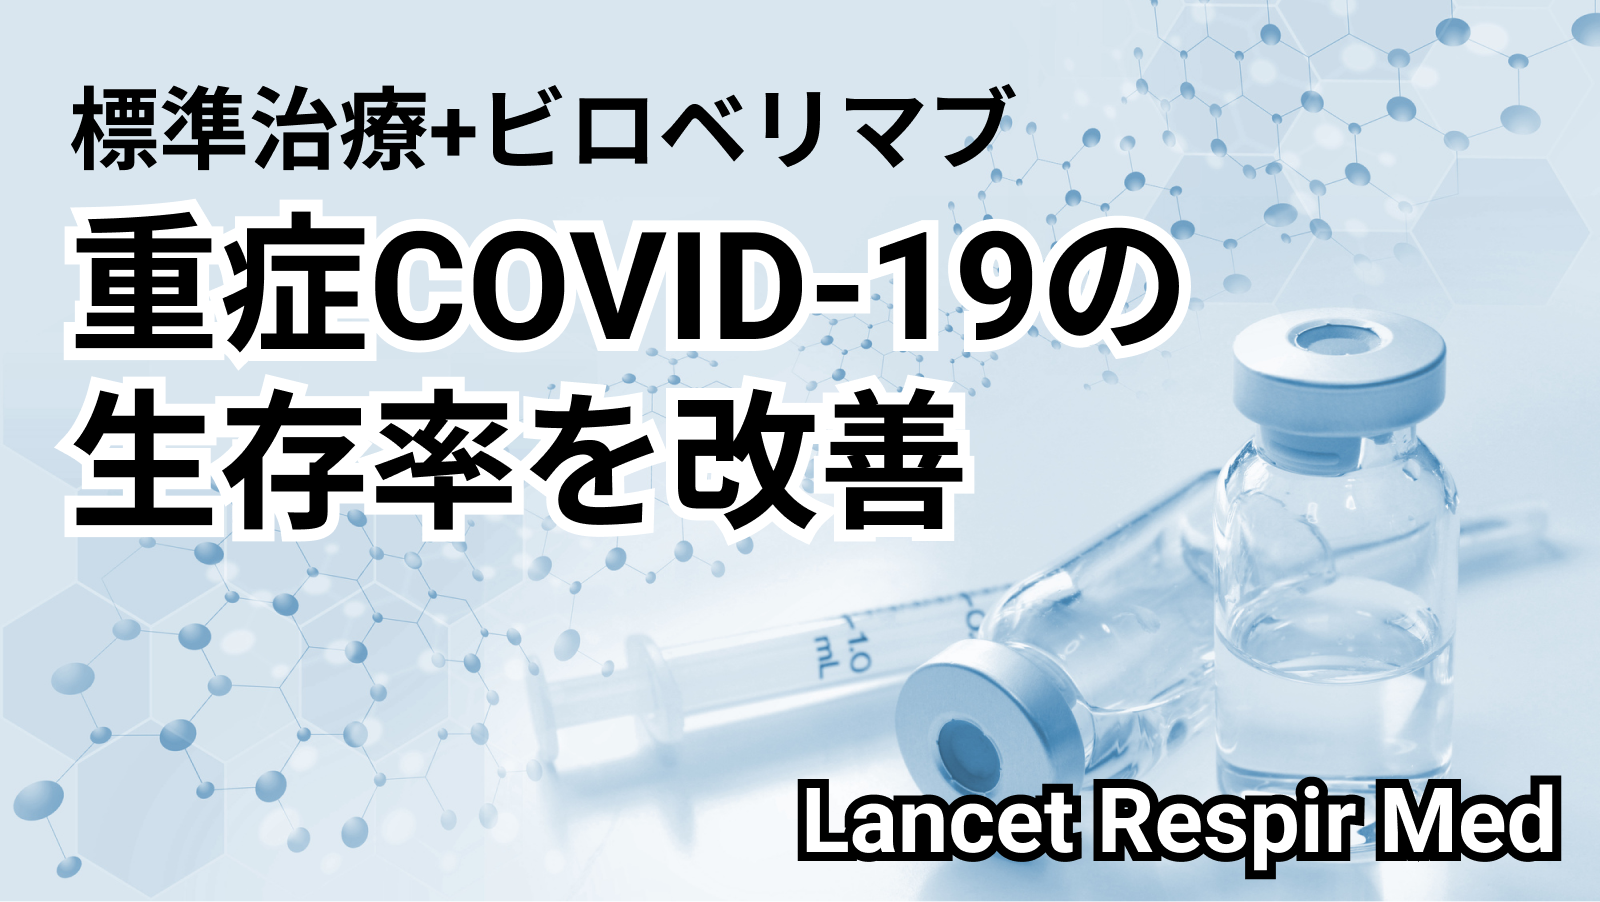 【Lancet Respir Med】標準治療+ビロベリマブで重症COVID-19の生存率が改善